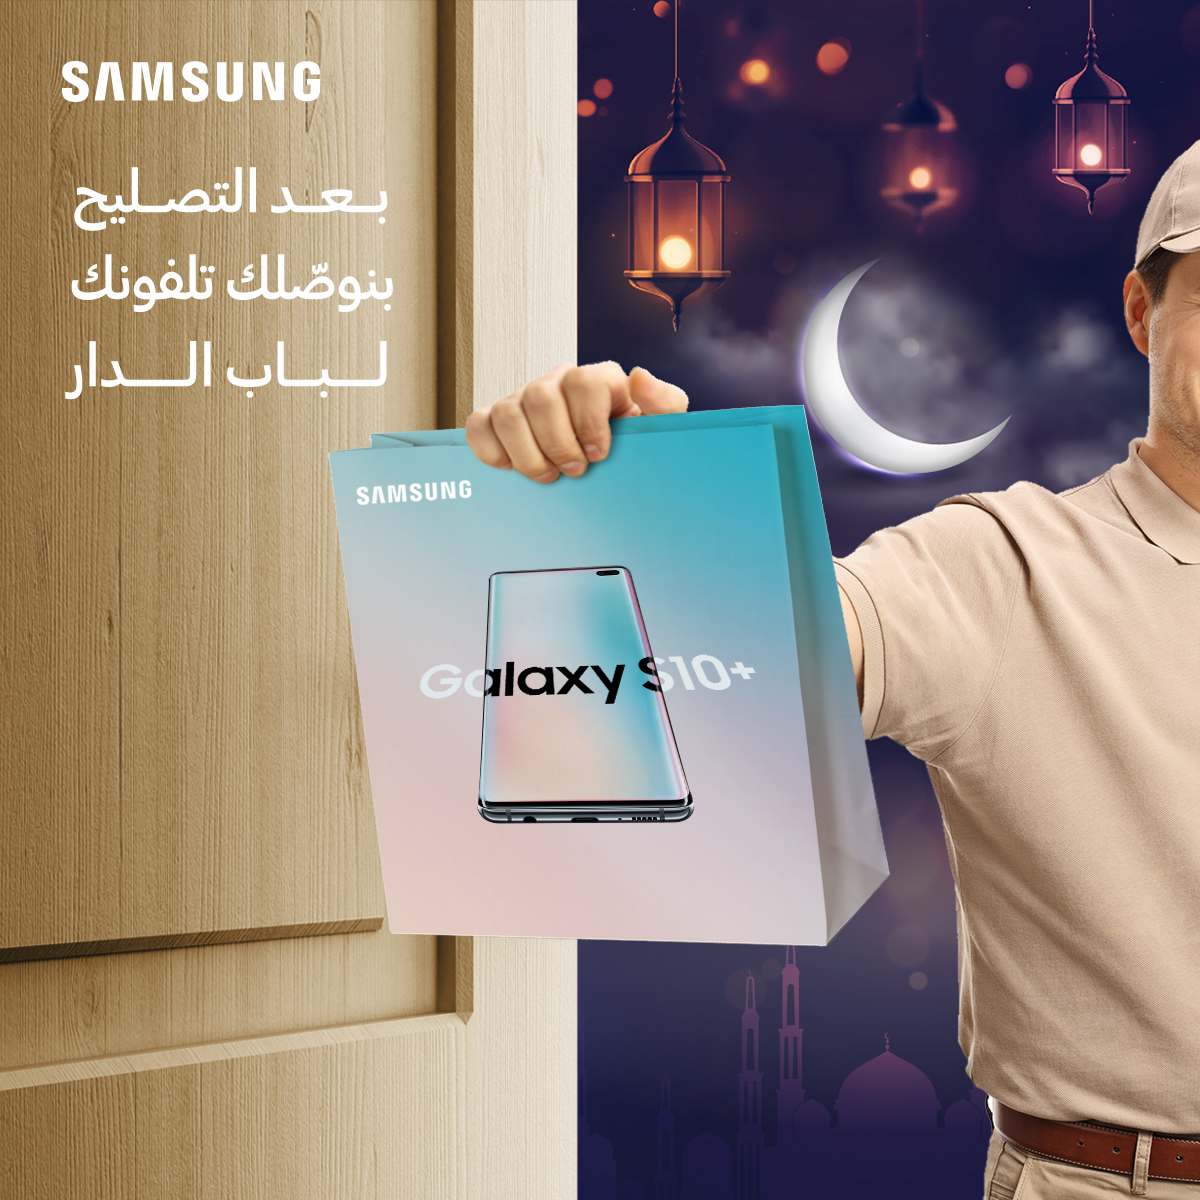 سامسونج إلكترونيكس المشرق العربي تطلق حملة رمضانية في مراكز خدمات ما بعد البيع والصيانة الخاصة بها في الأردن